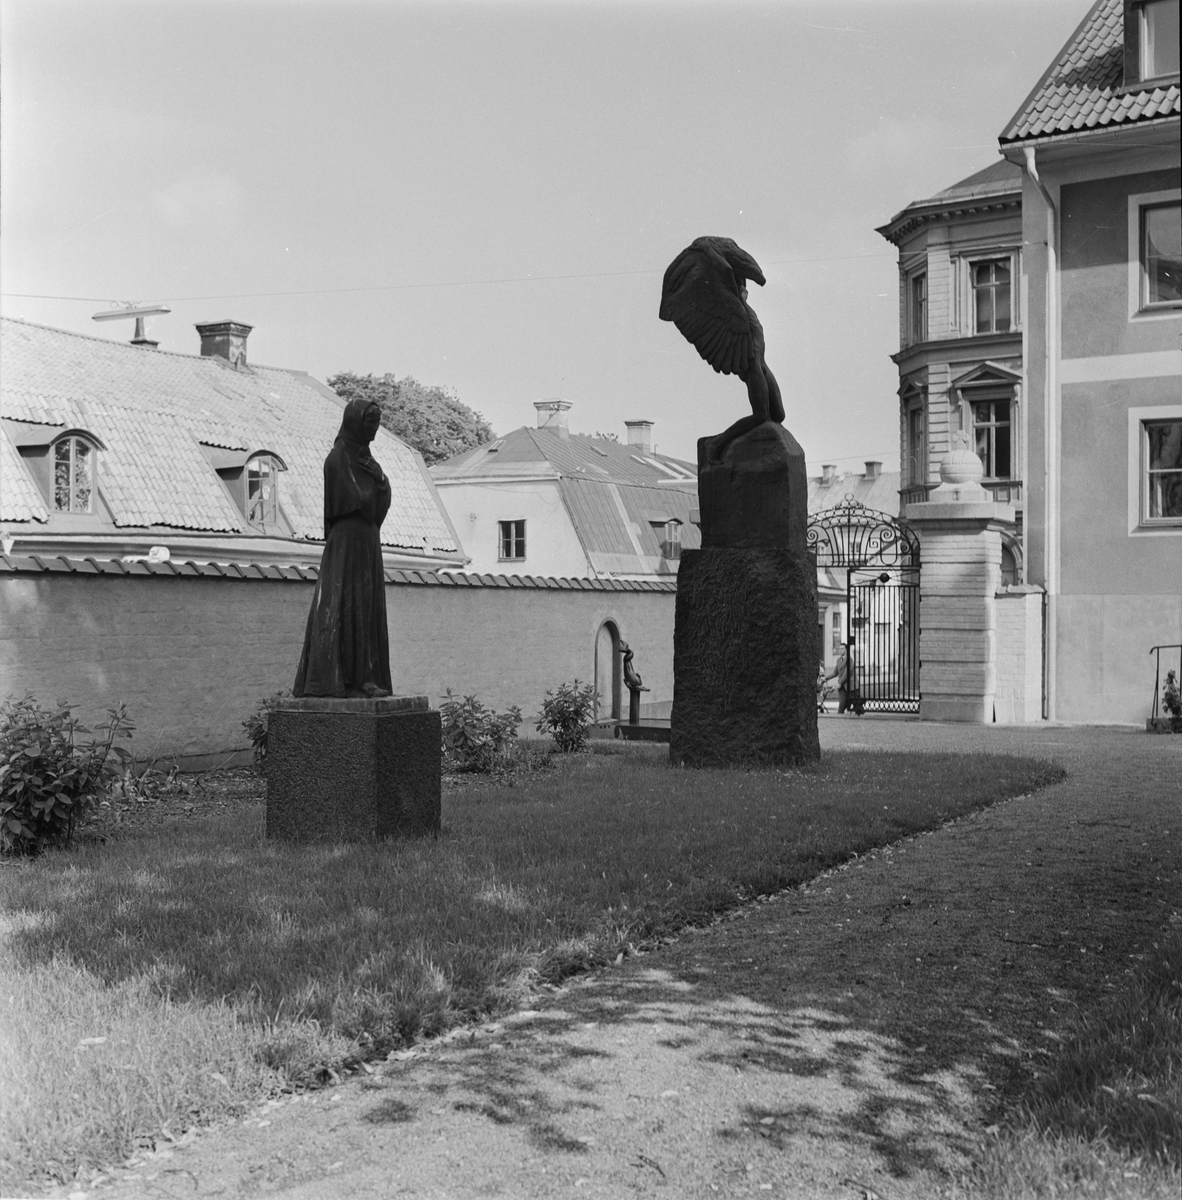 Statyerna Mor av Carl Eldh och Vingarna av Carl Milles vid Uplands Nation, S:t Larsgatan, Uppsala